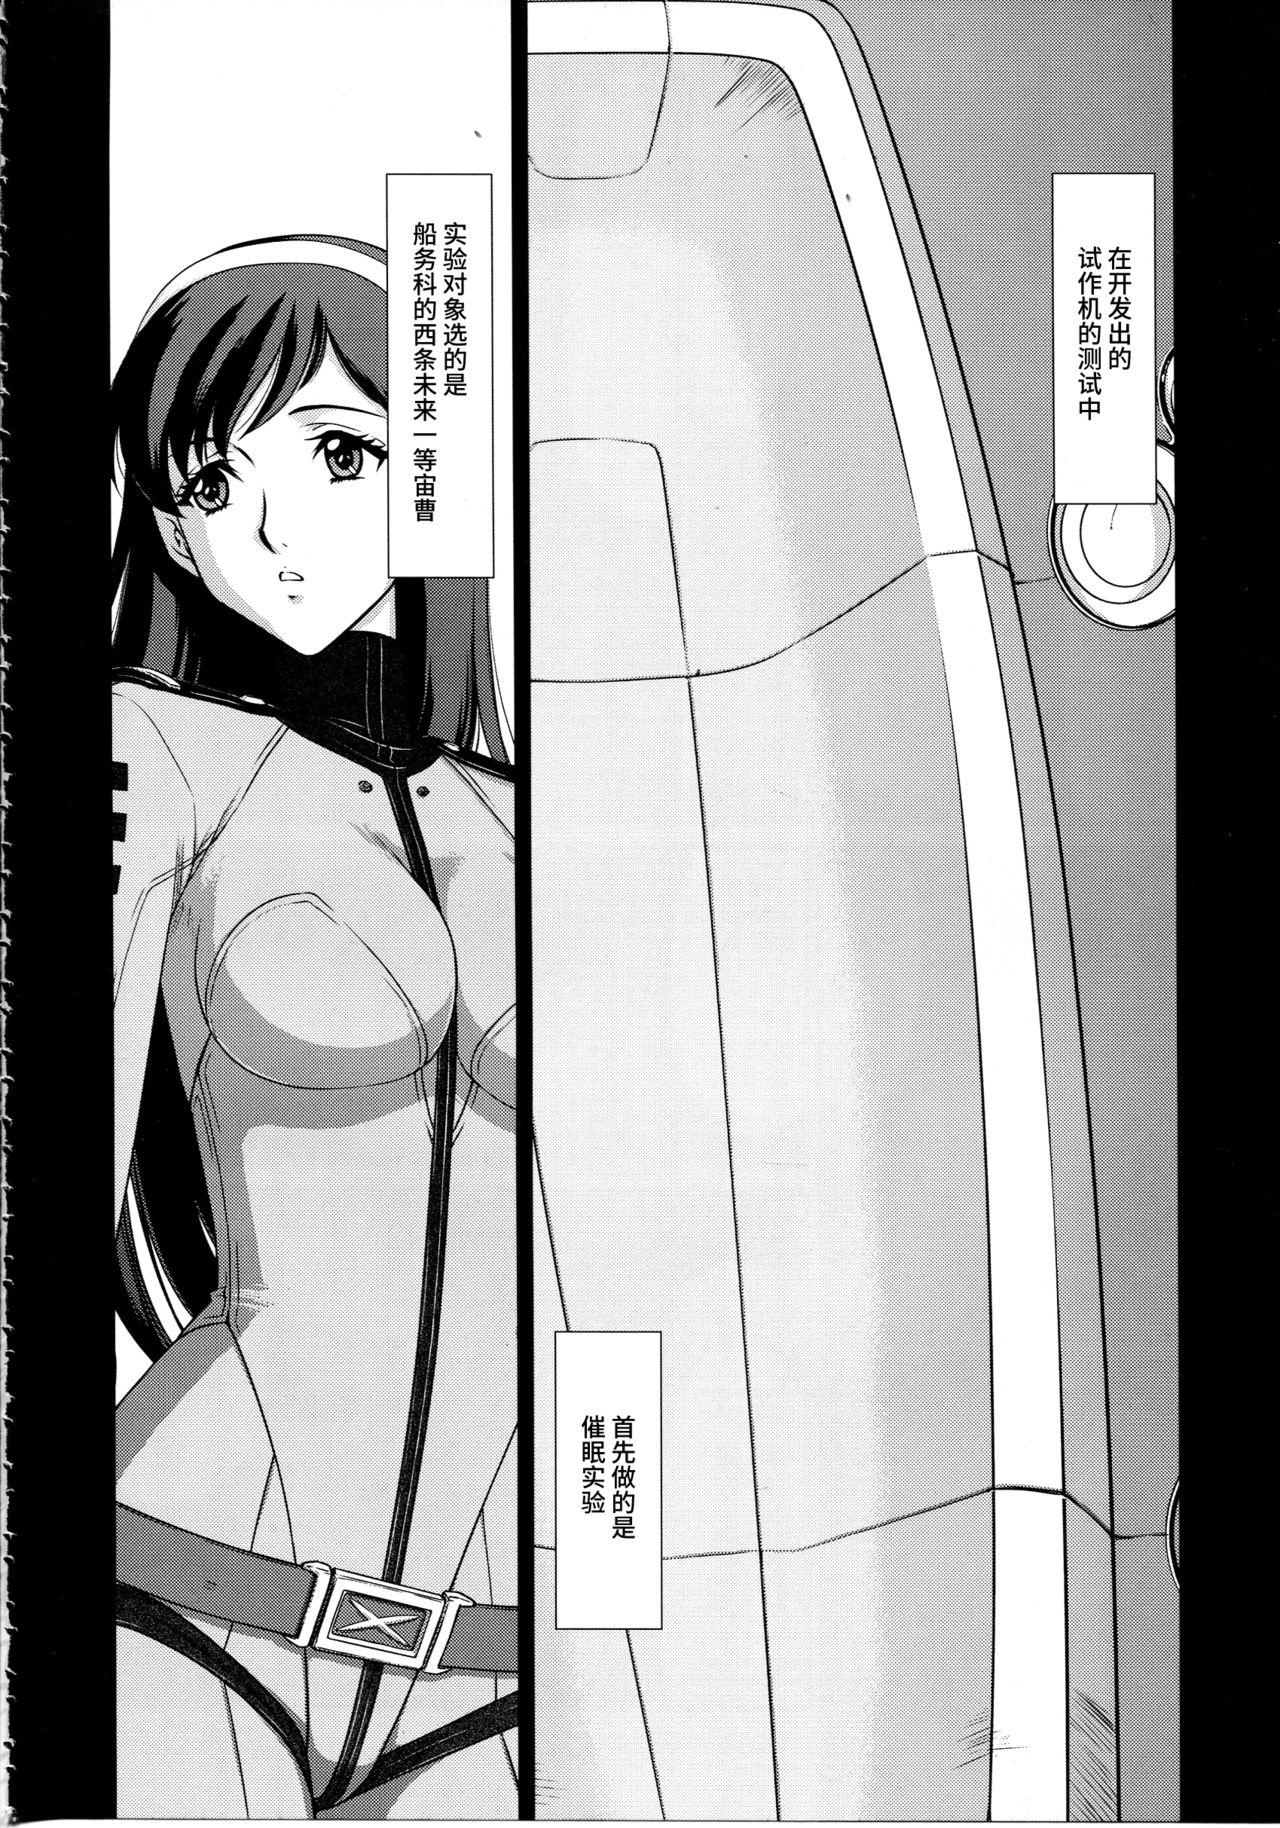 Twistys Yuki no Shizuku - Space battleship yamato 2199 Van - Page 5